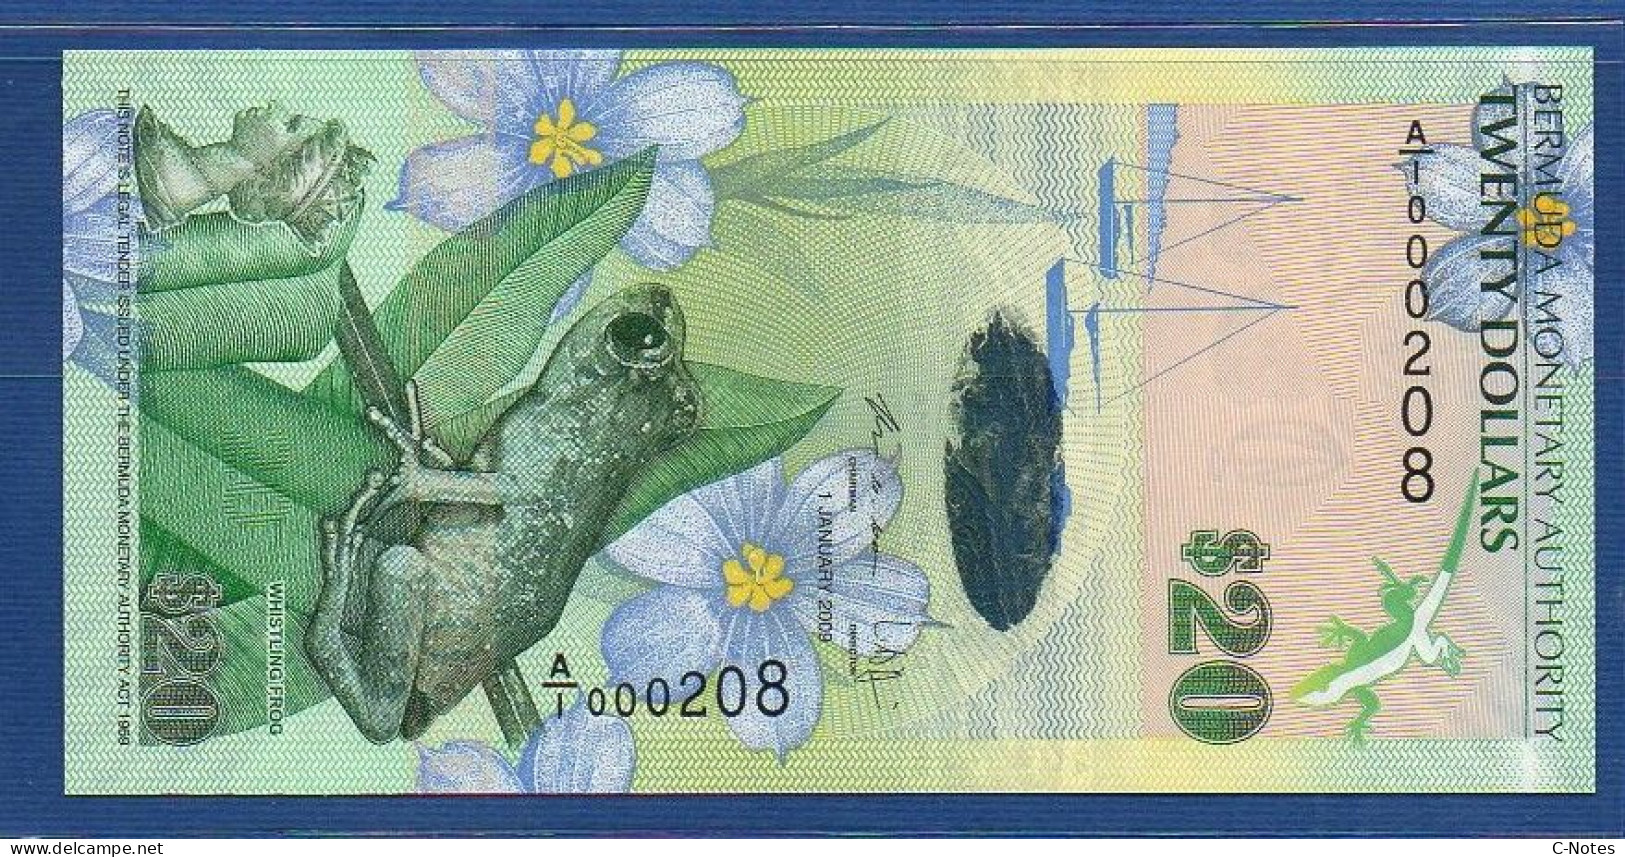 BERMUDA - P.60b1 – 20 Dollars 2009 UNC, S/n A/1 000208 LOW NUMBER - Bermudes